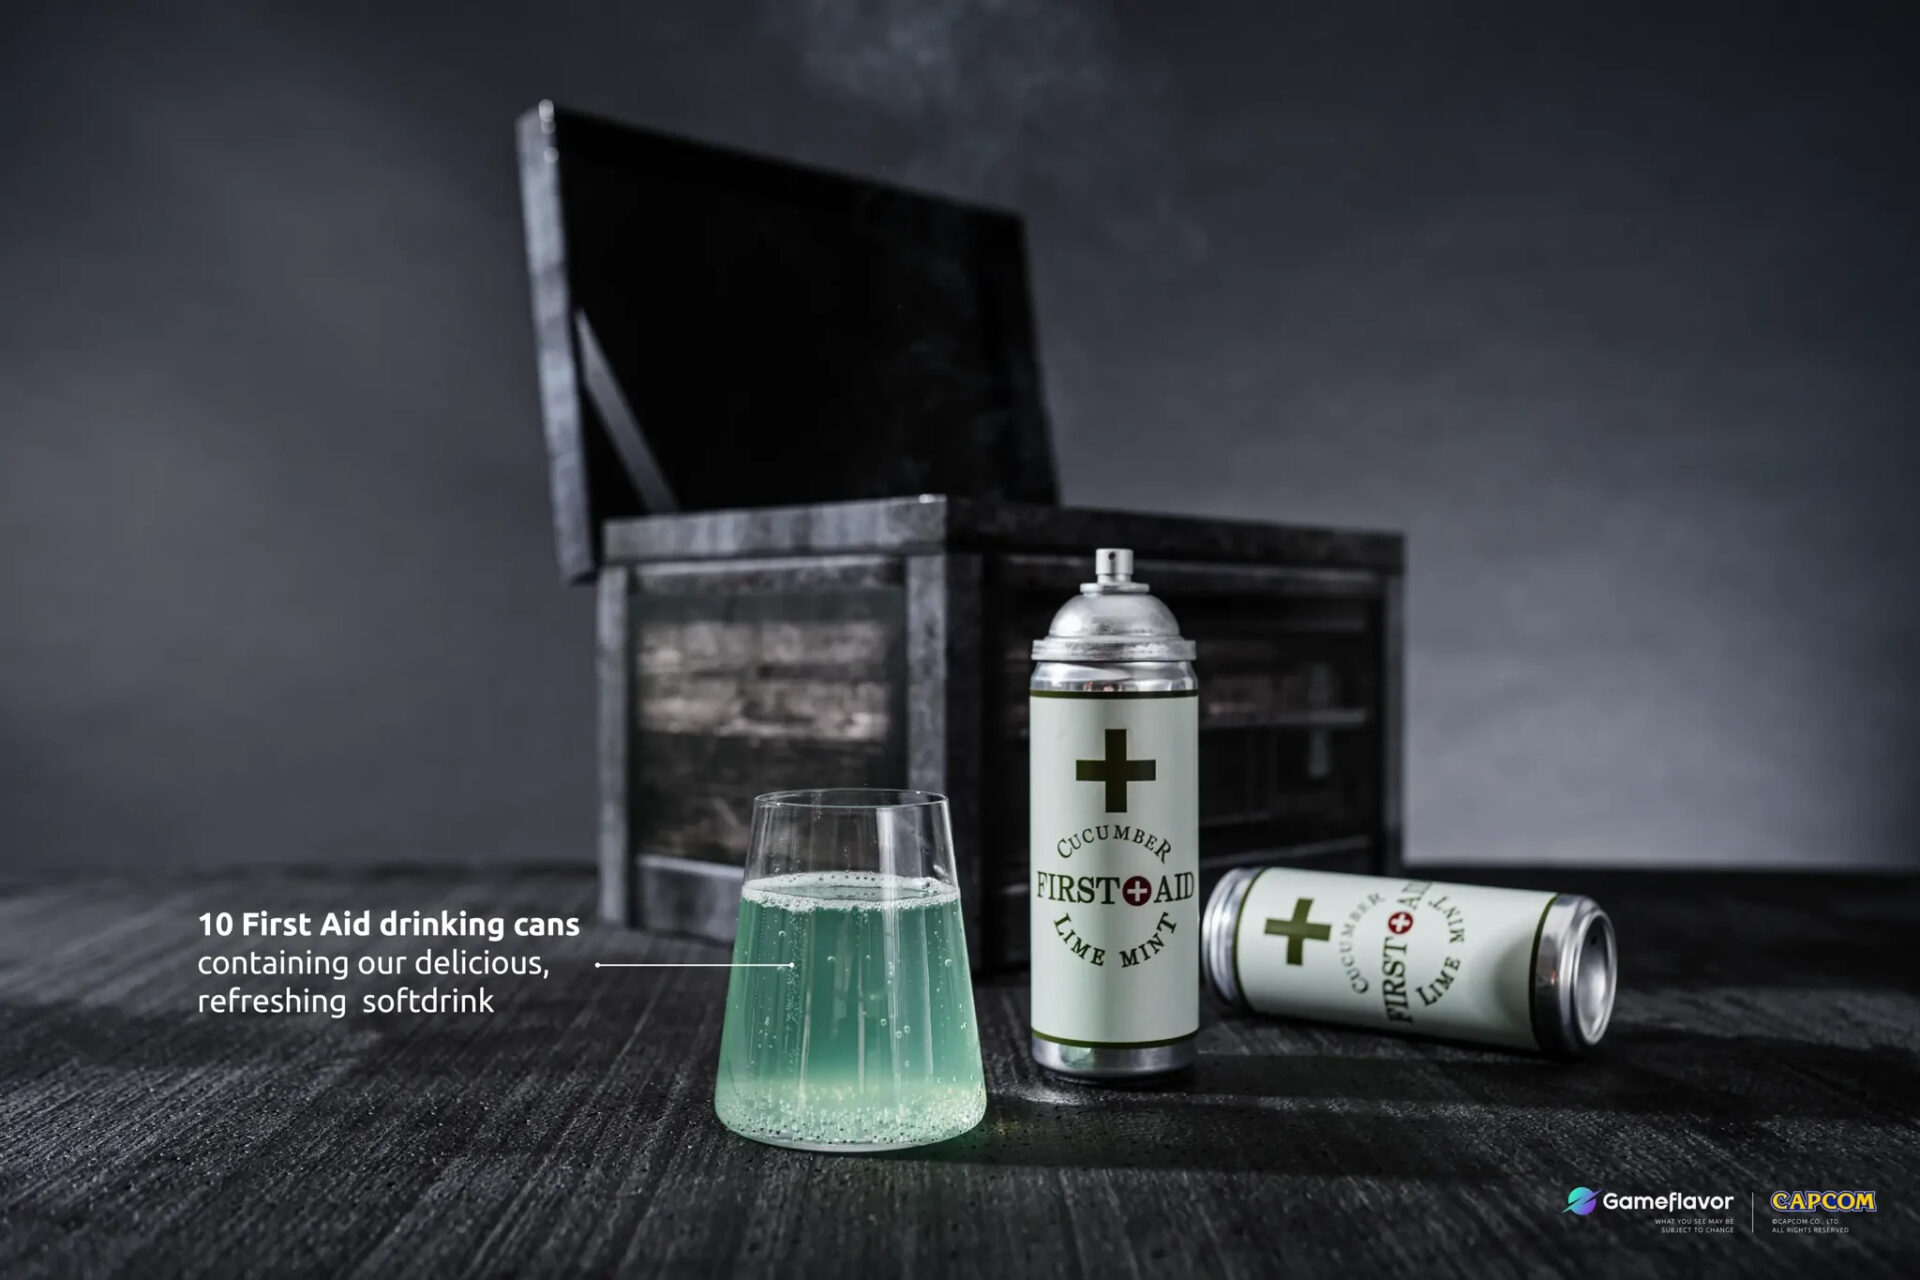 卡普空與飲料公司限量推出要價 6400 台幣的《惡靈古堡》主題「急救噴霧」無酒精飲料套組 - 電腦王阿達